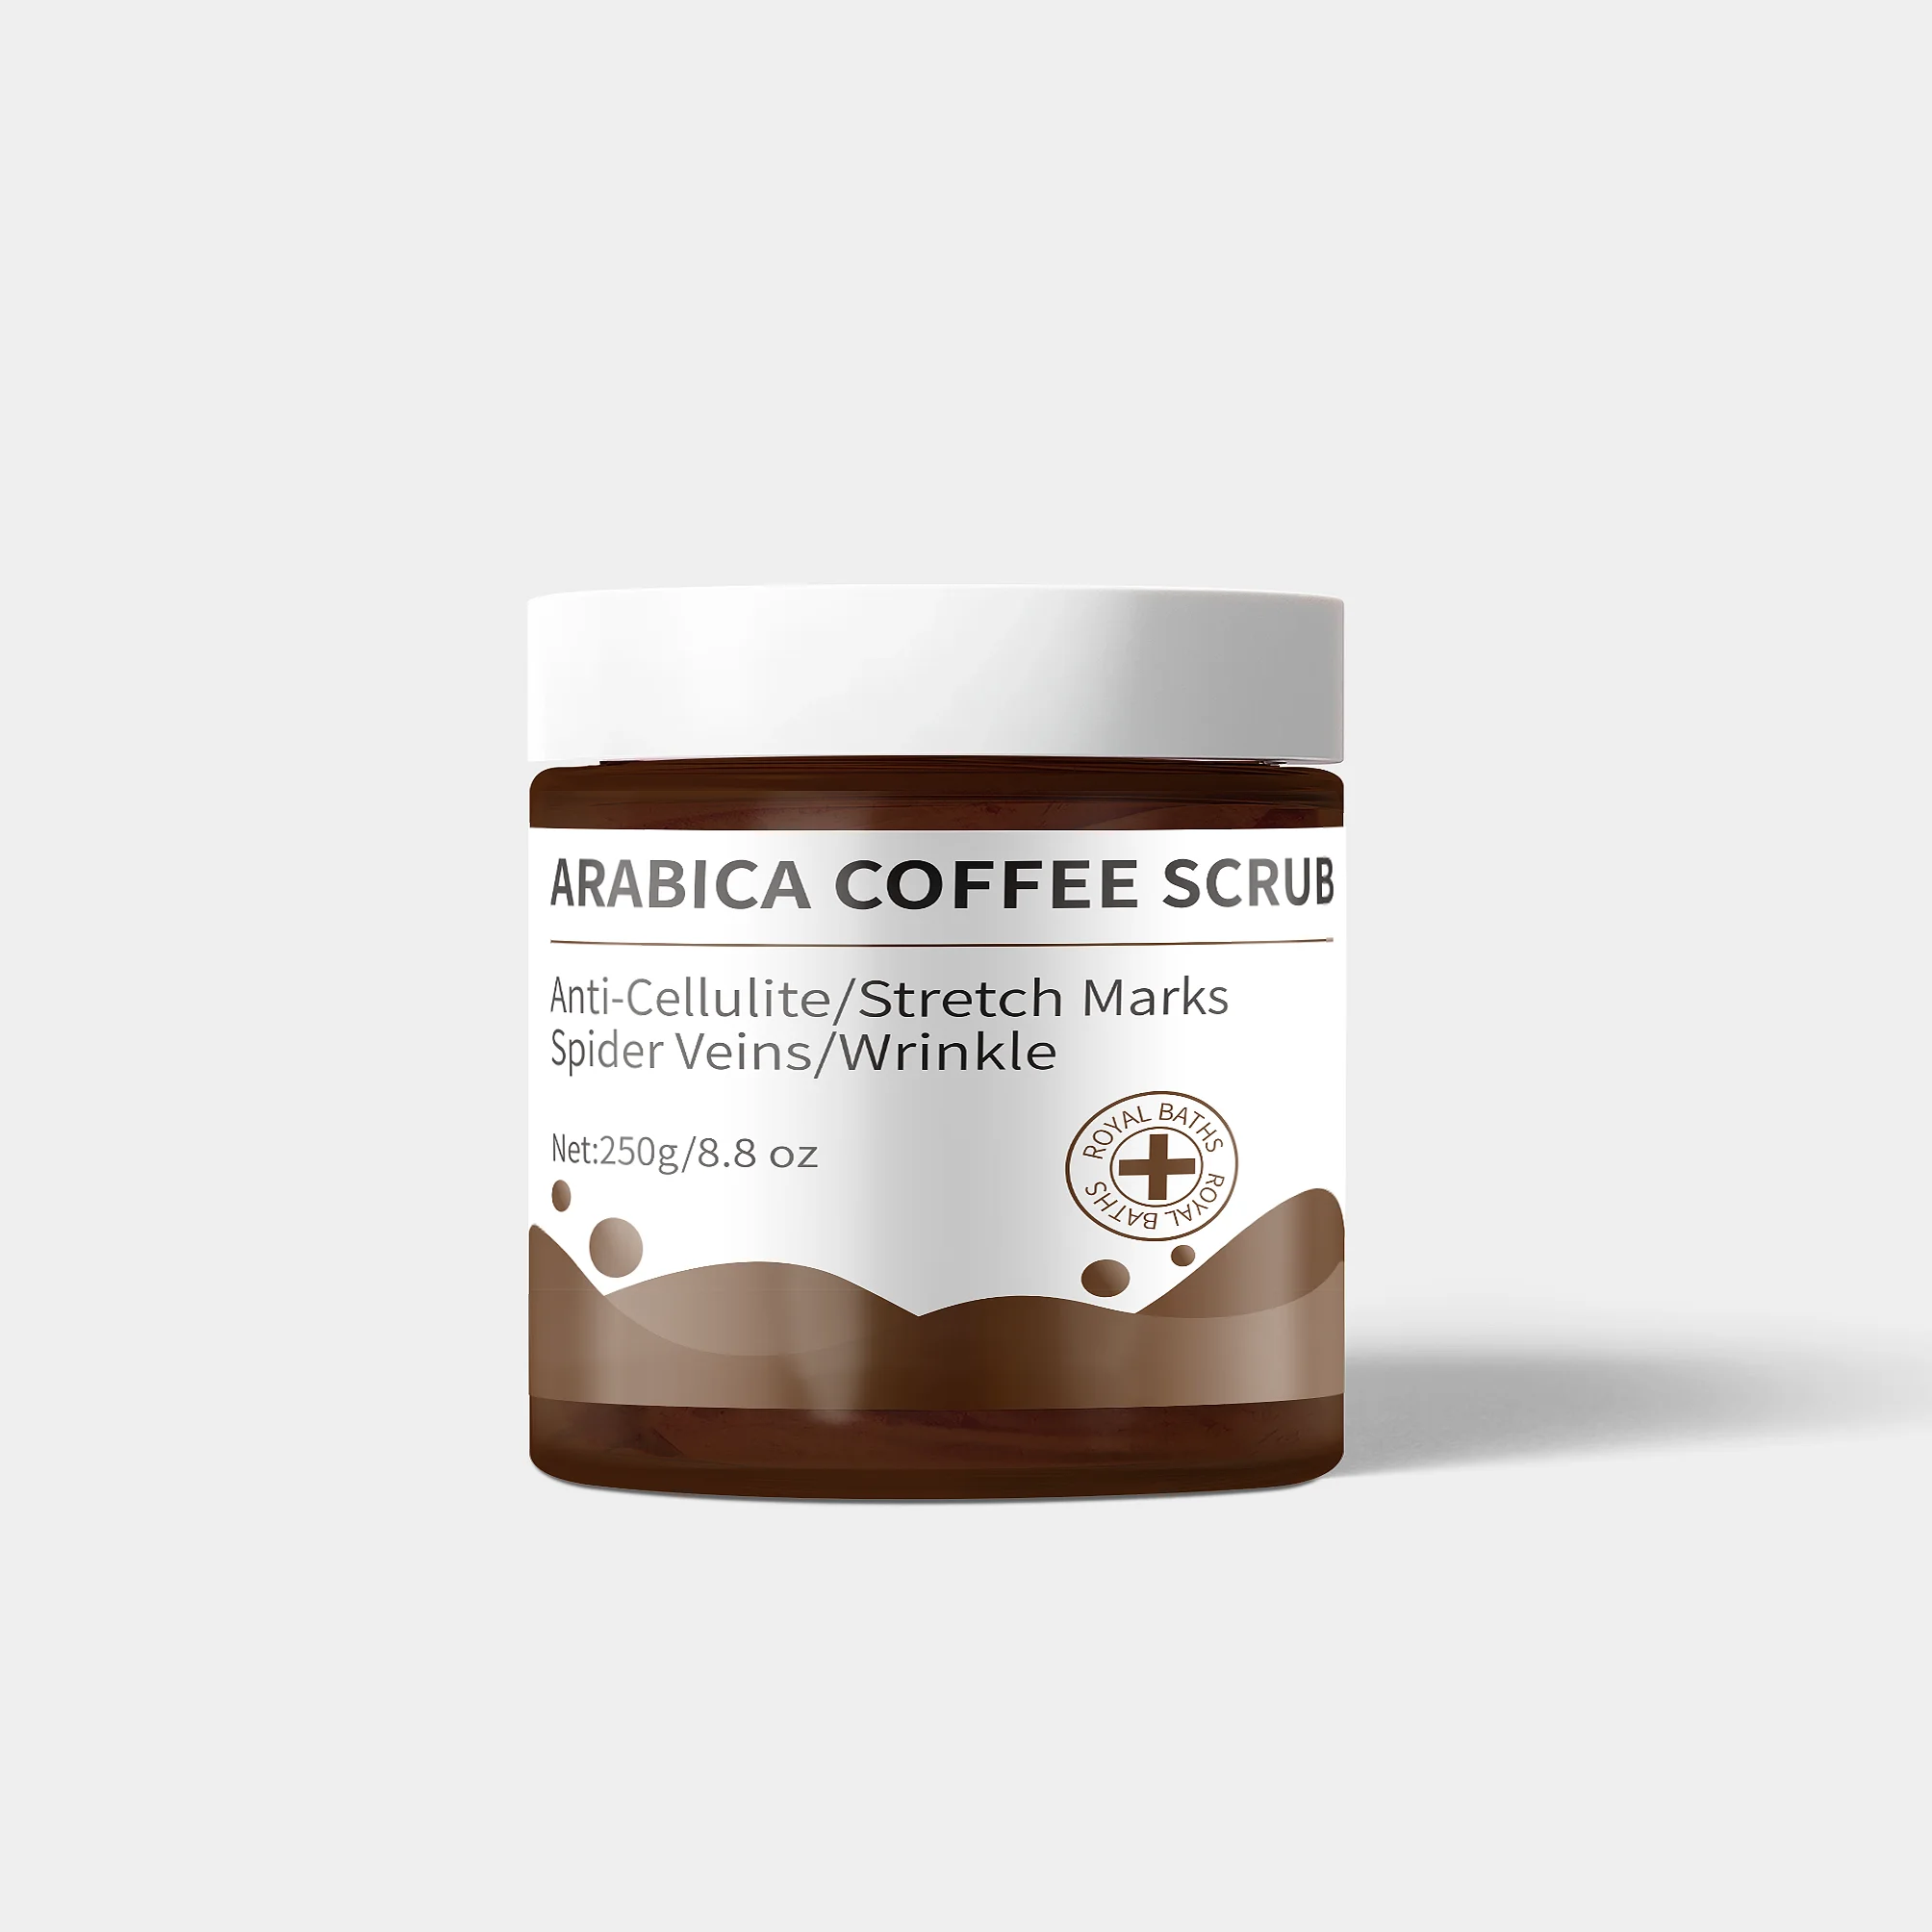 

Scrubs Manufacturers Private Label Face Clean Anti Cellulite Exfoliator Organic Arabic Black Coffee Extract Body Scrub